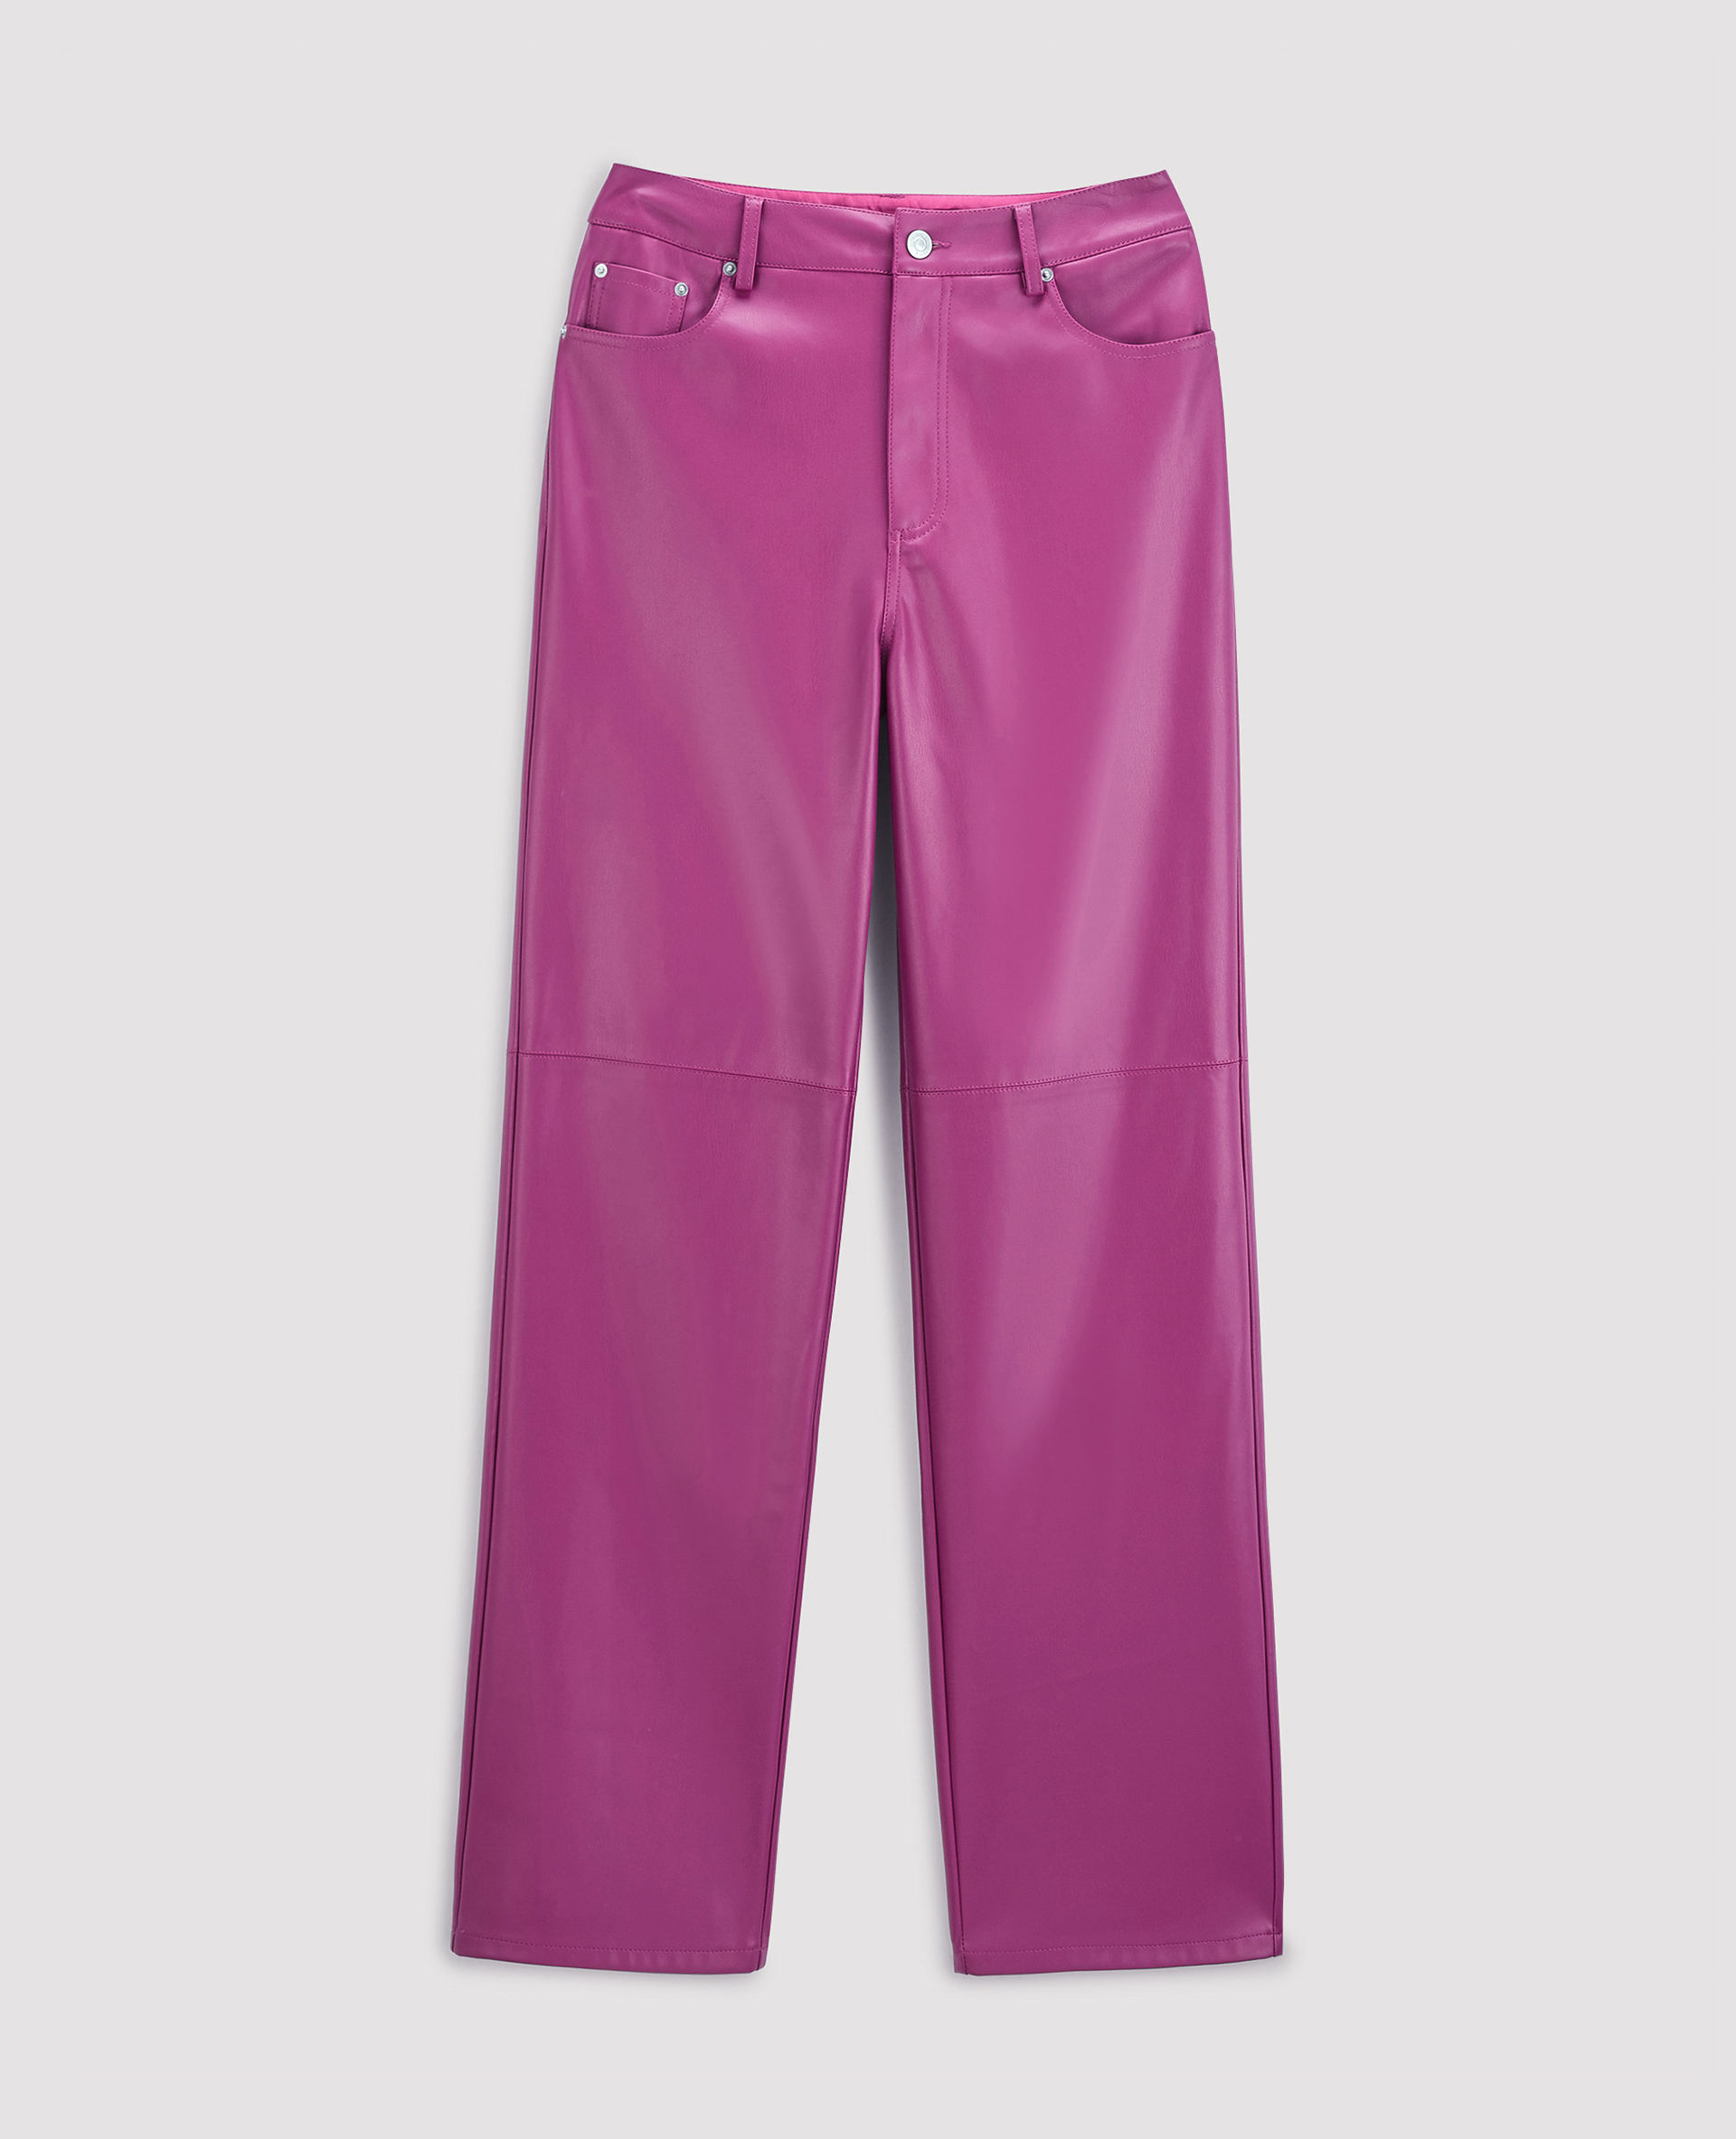 Pantalon droit en simili cuir violet - Pimkie